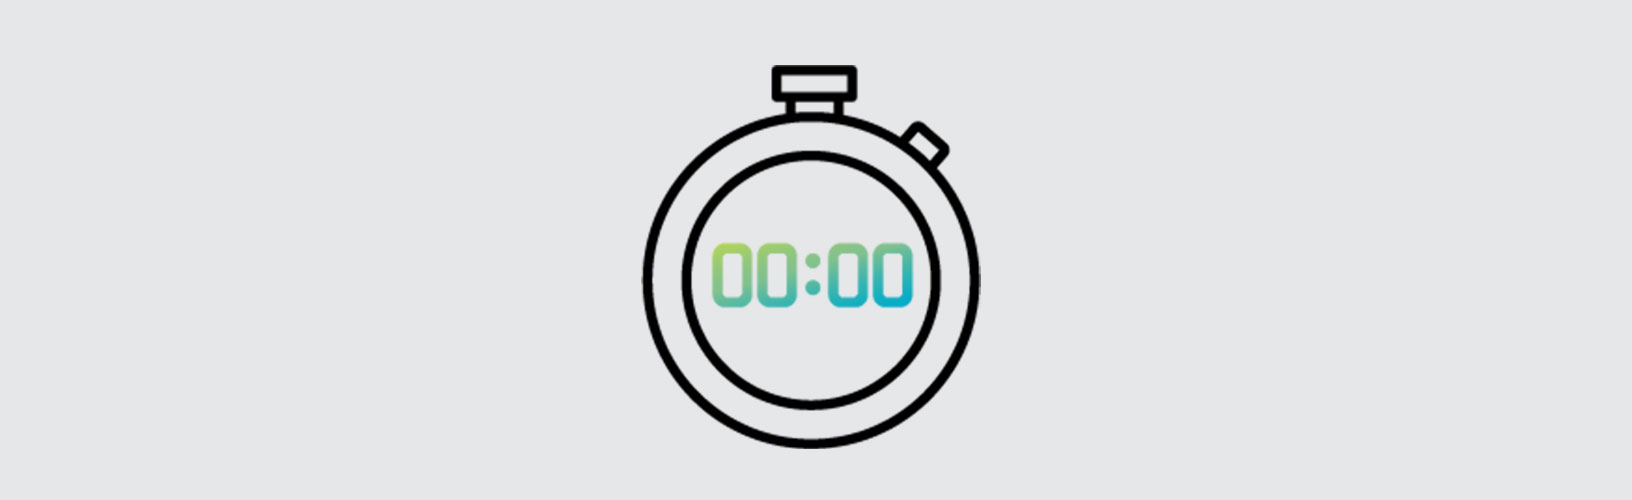 Icono de la marca Hexagon que representa un cronometraje (un cronómetro)